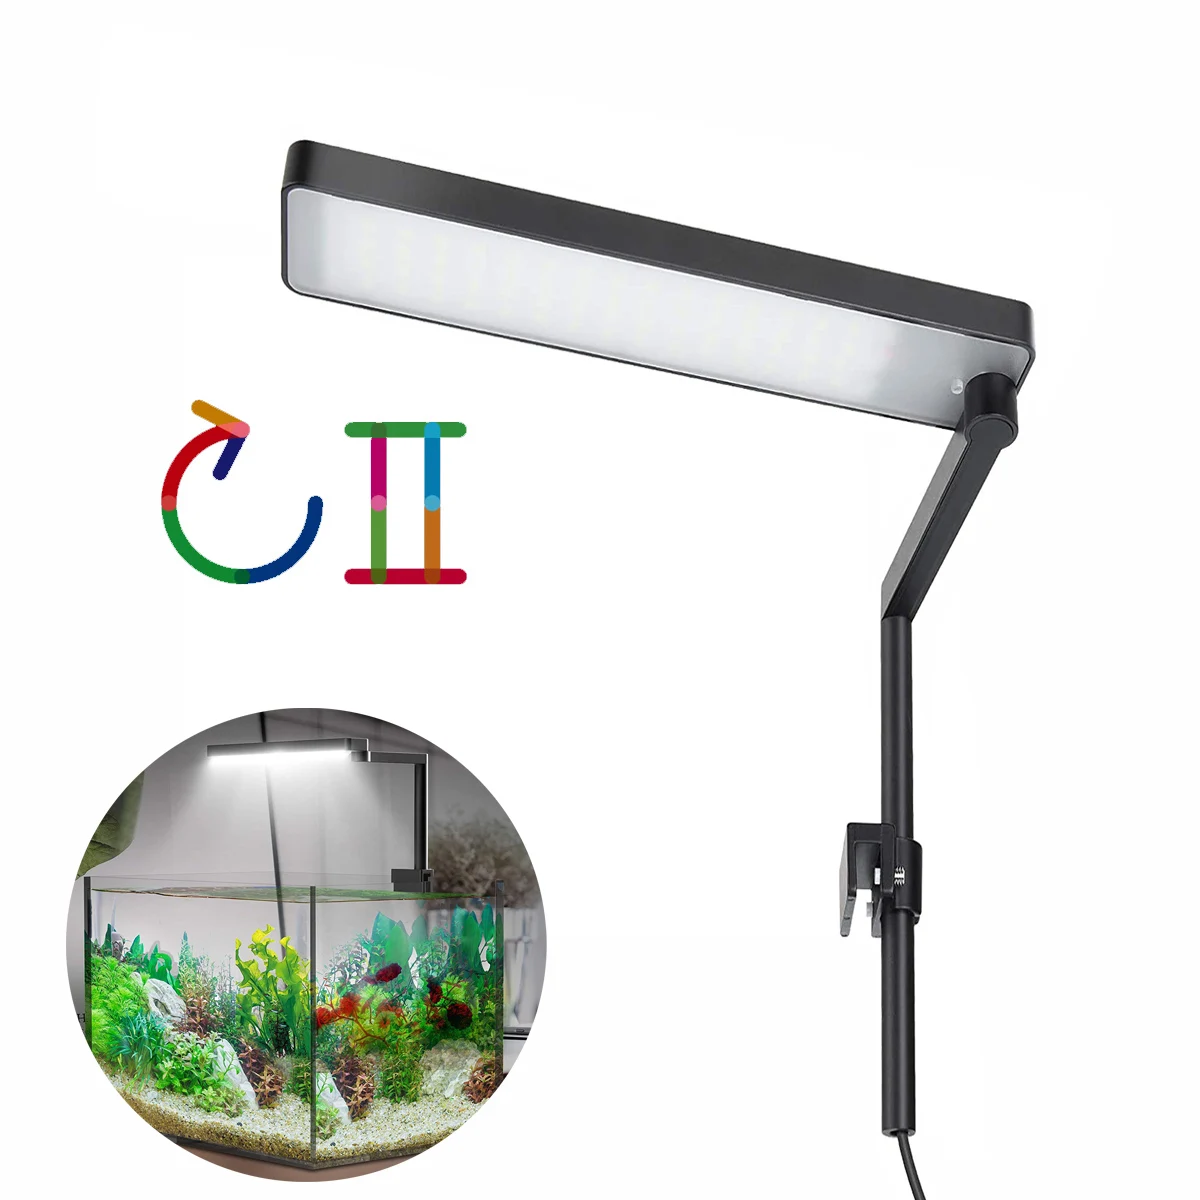 저렴한 Chihiros-C2 C II 시리즈 LED 조명 미니 나노 클립 램프, 수족관 식물 성장등 블루투스 컨트롤러 일출 일몰